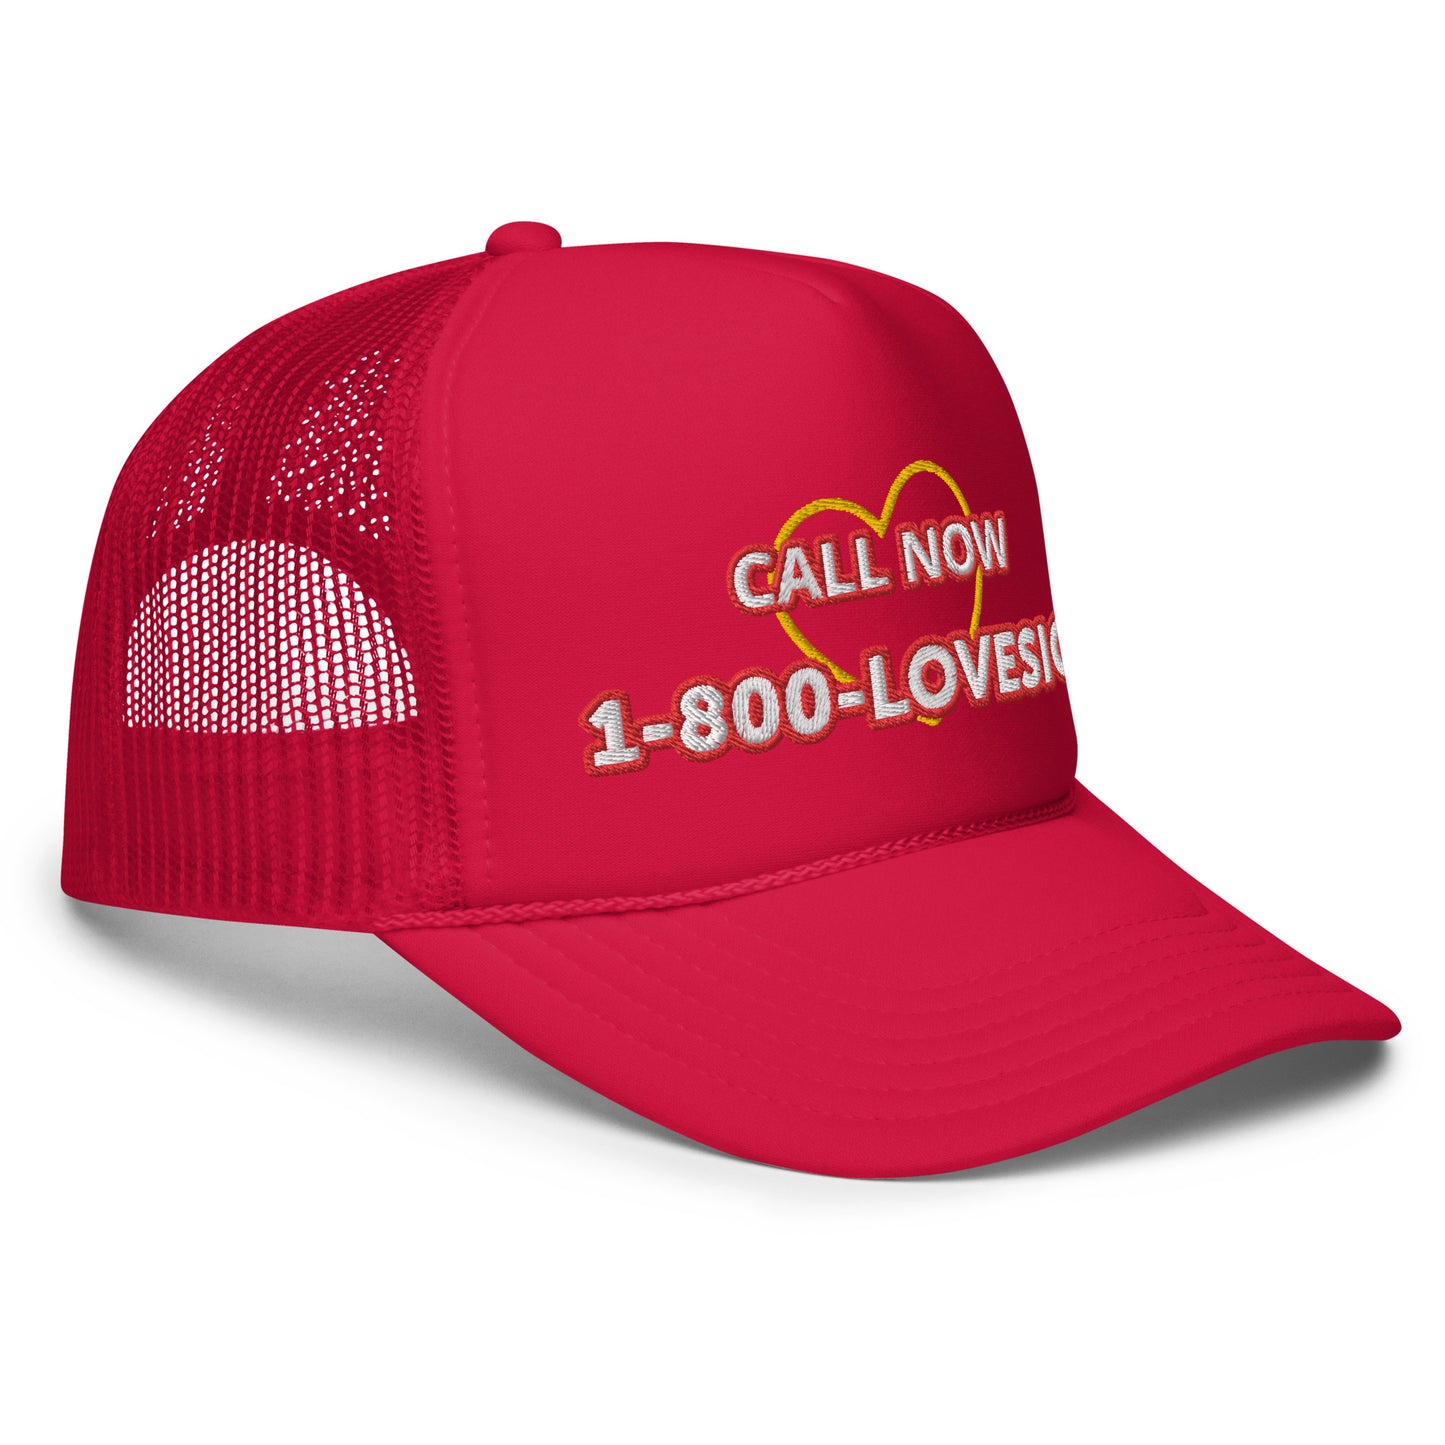 1-800-LOVESICK Foam trucker hat